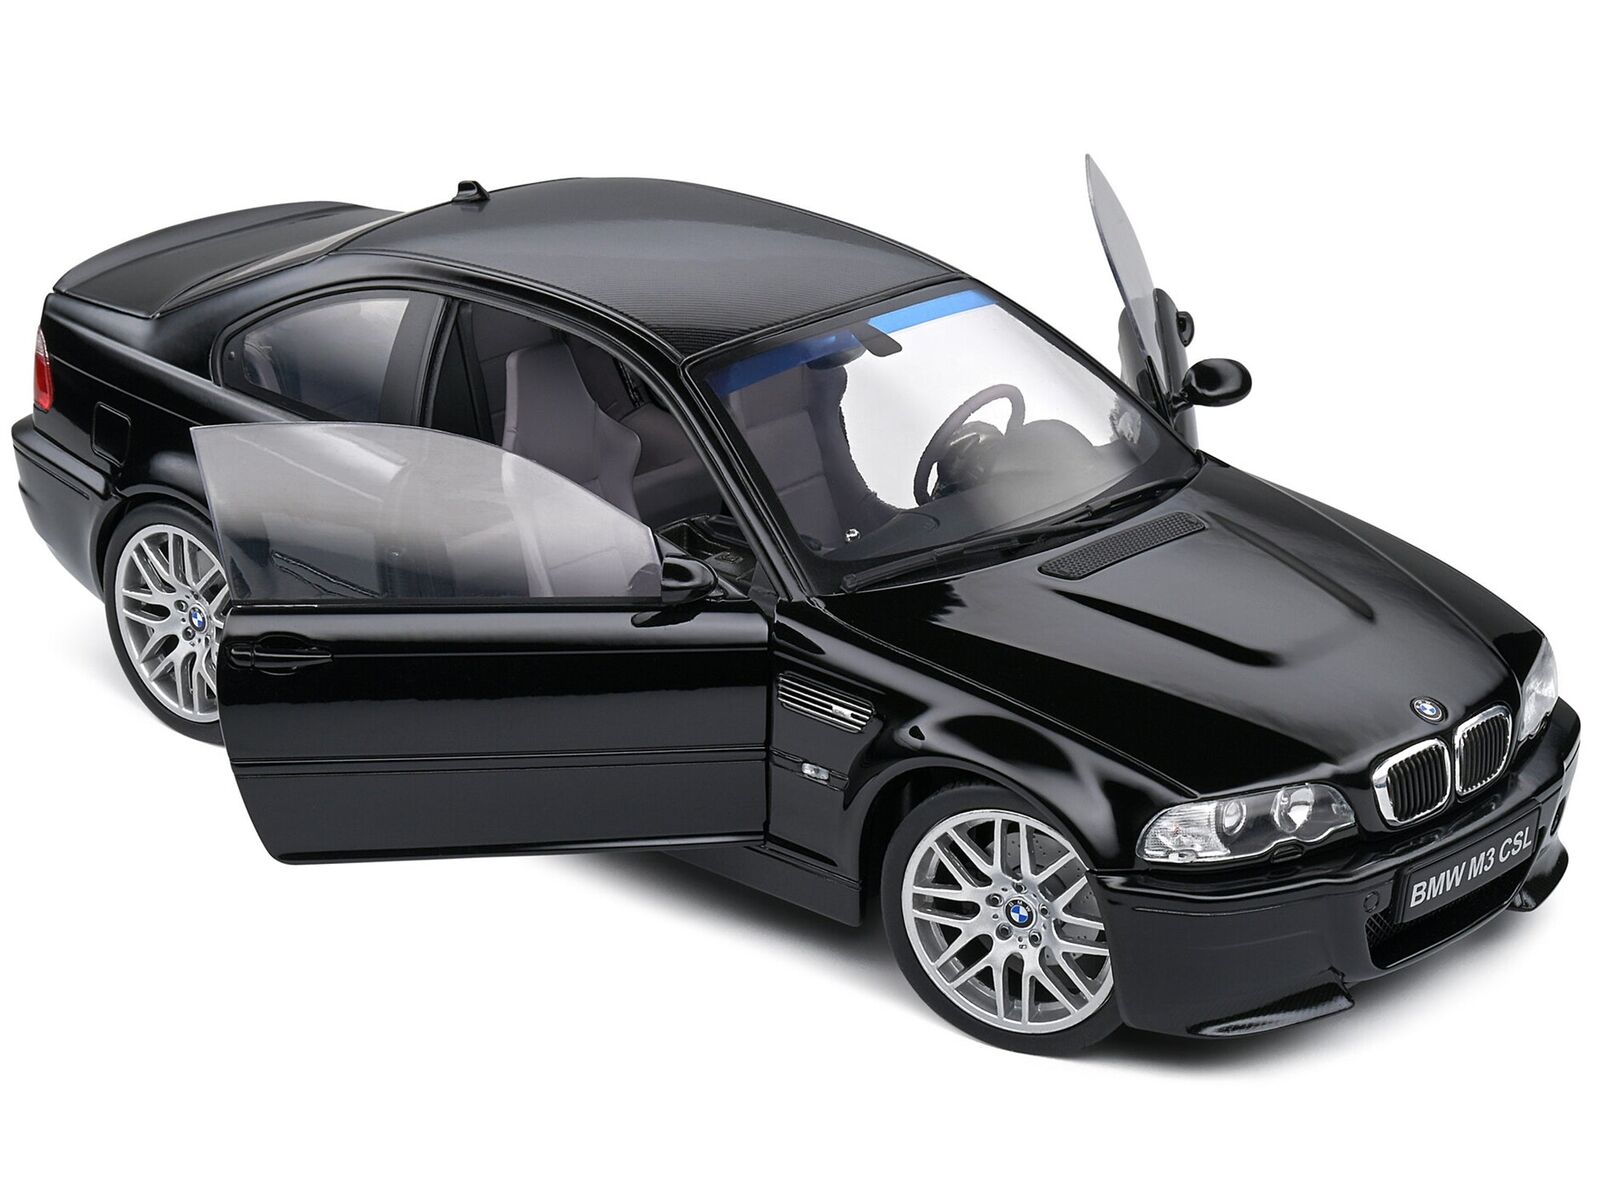 2003 BMW E46 CSL Black 1/18 Diecast Model Car